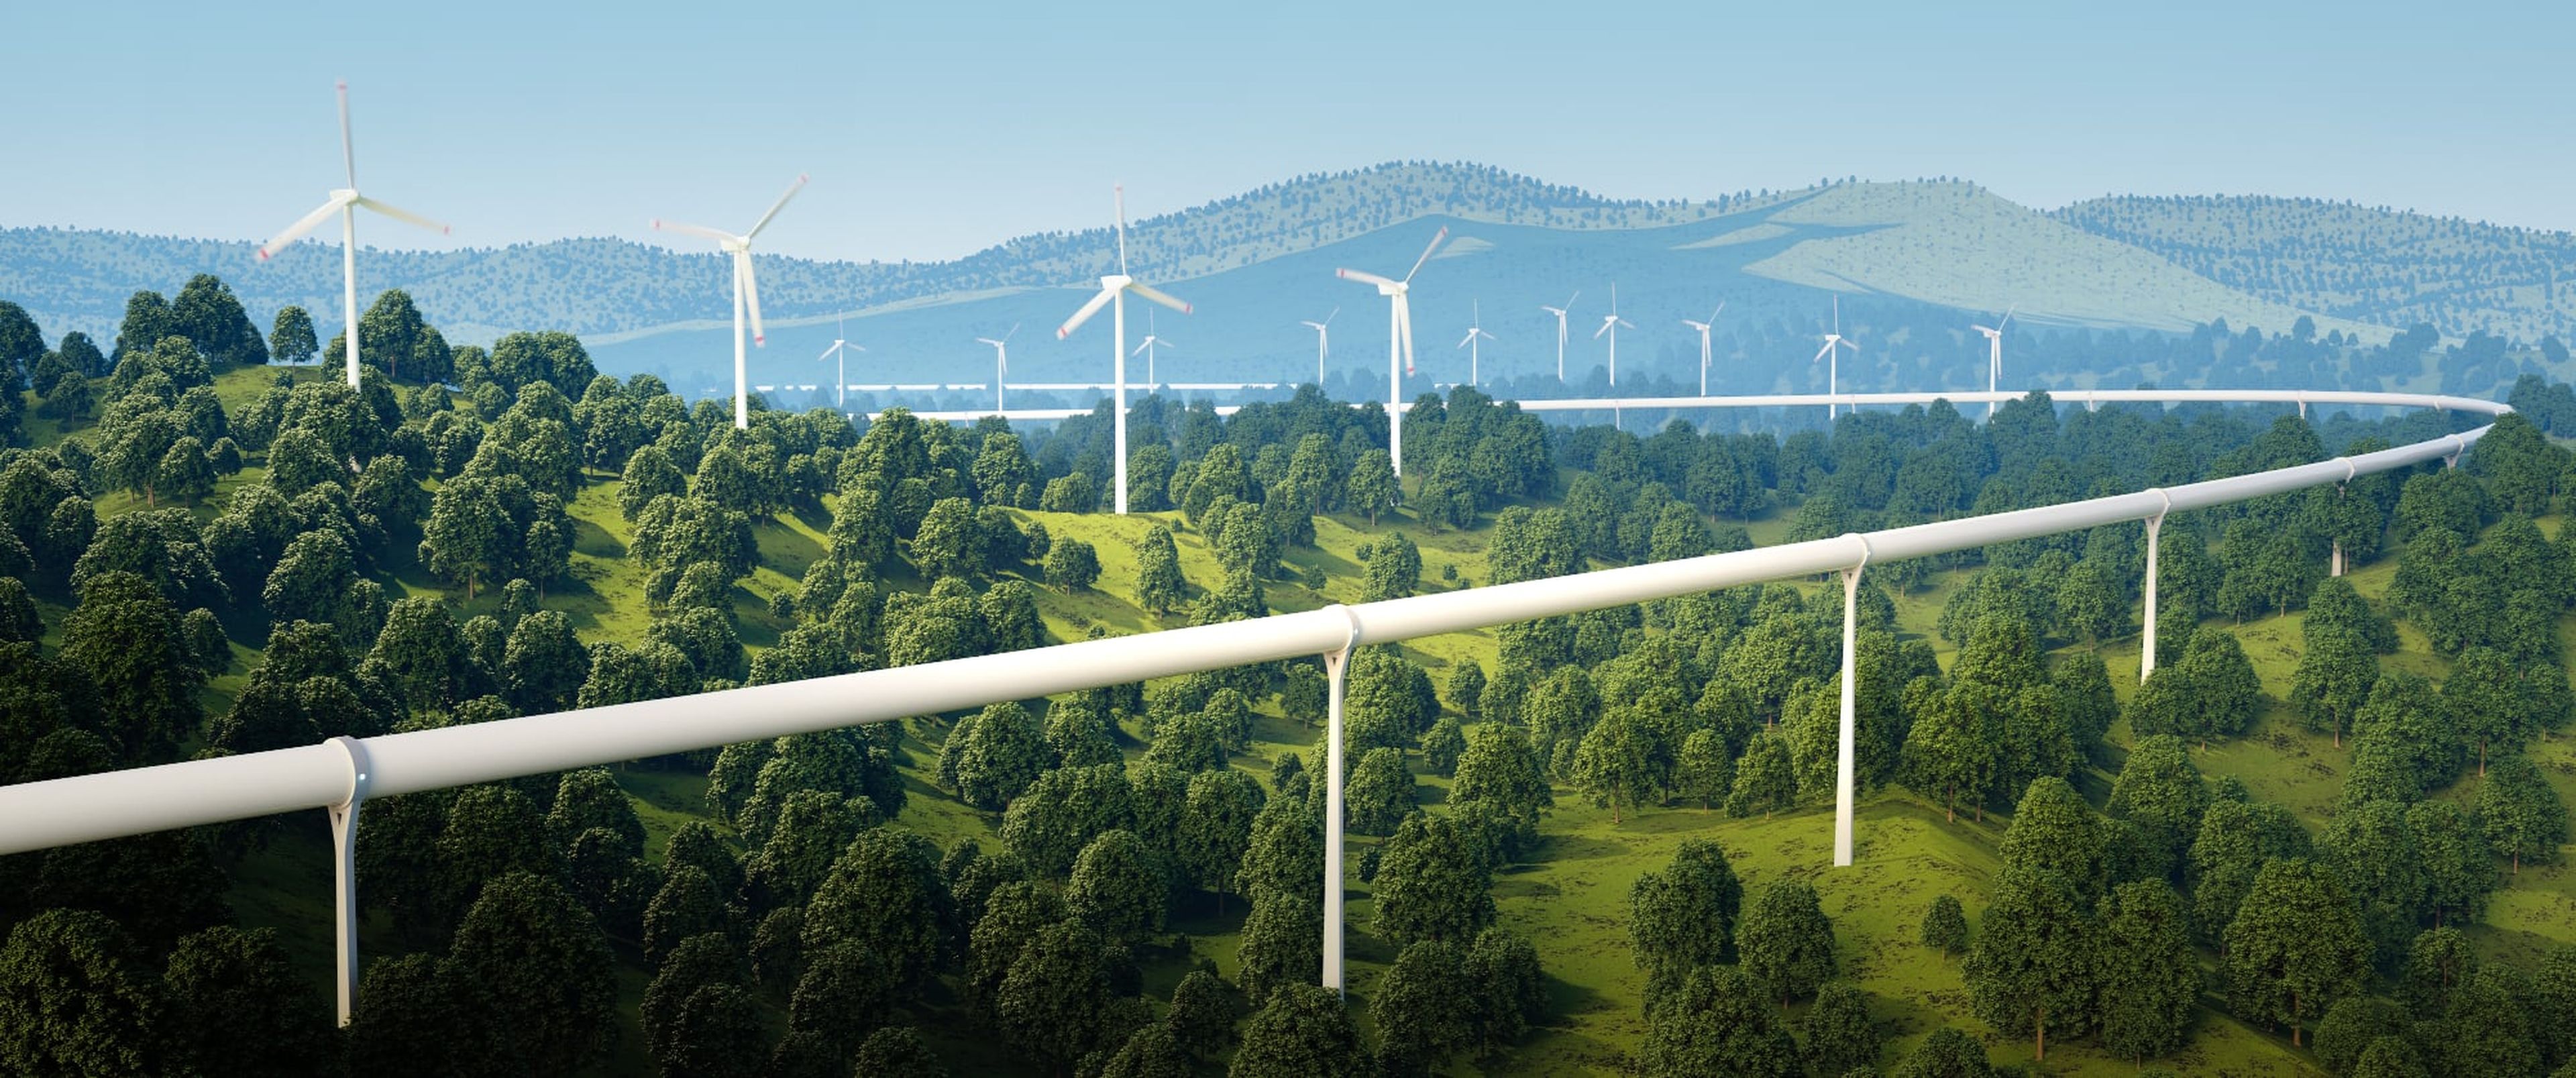 TTres pilares fundamentales: la eficiencia energética, la descarbonización y la adquisición de energía renovable